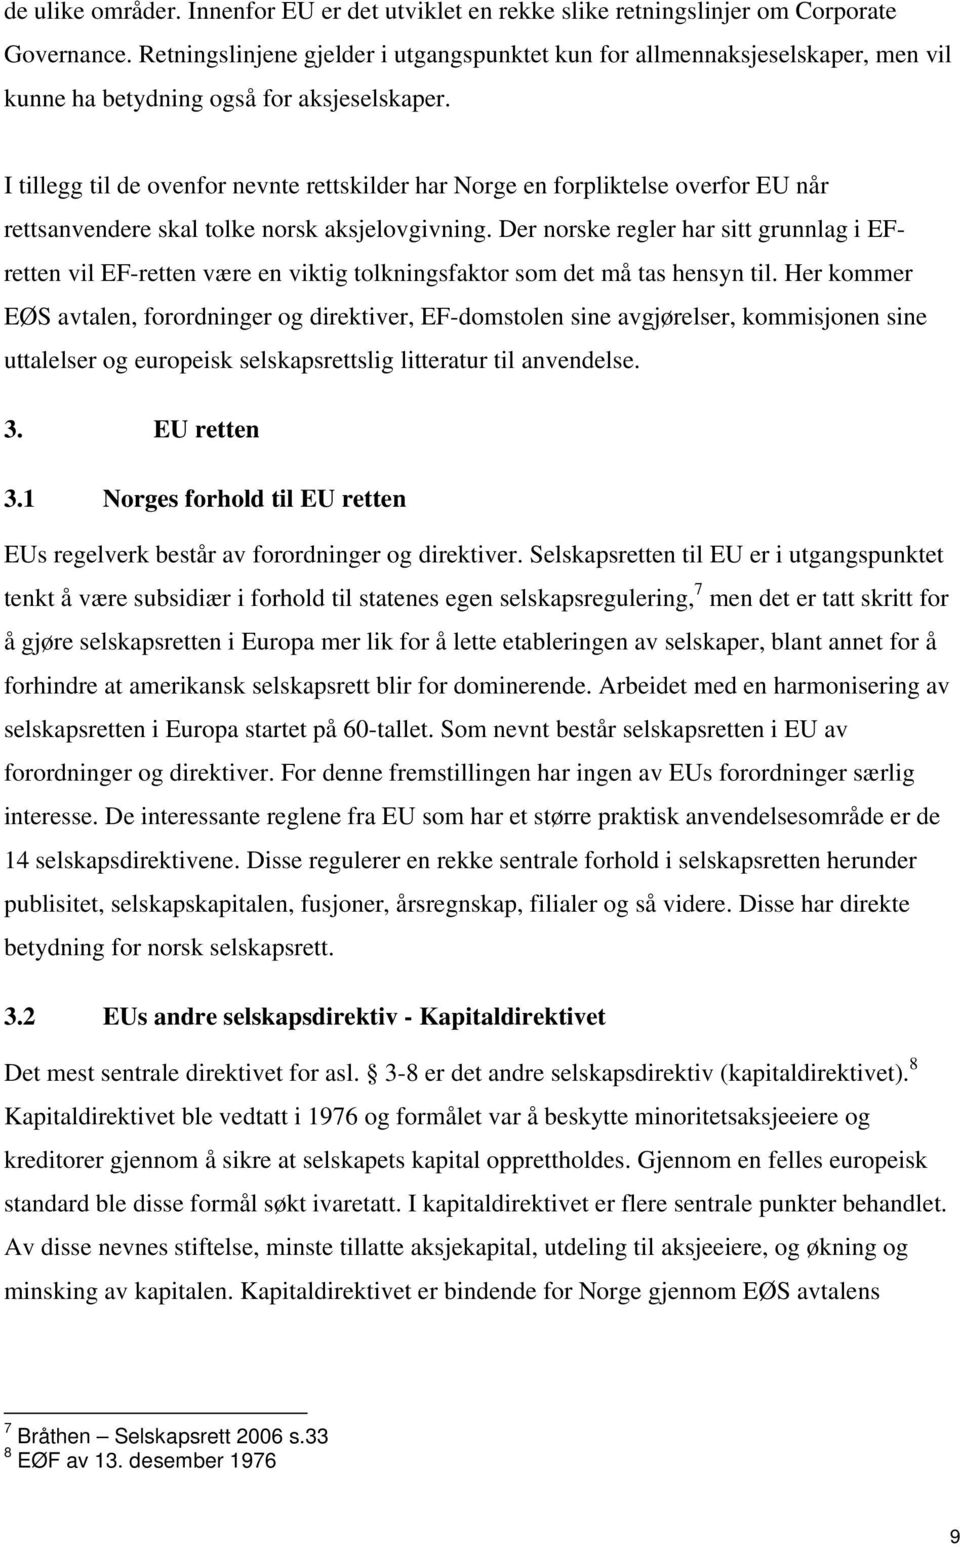 I tillegg til de ovenfor nevnte rettskilder har Norge en forpliktelse overfor EU når rettsanvendere skal tolke norsk aksjelovgivning.